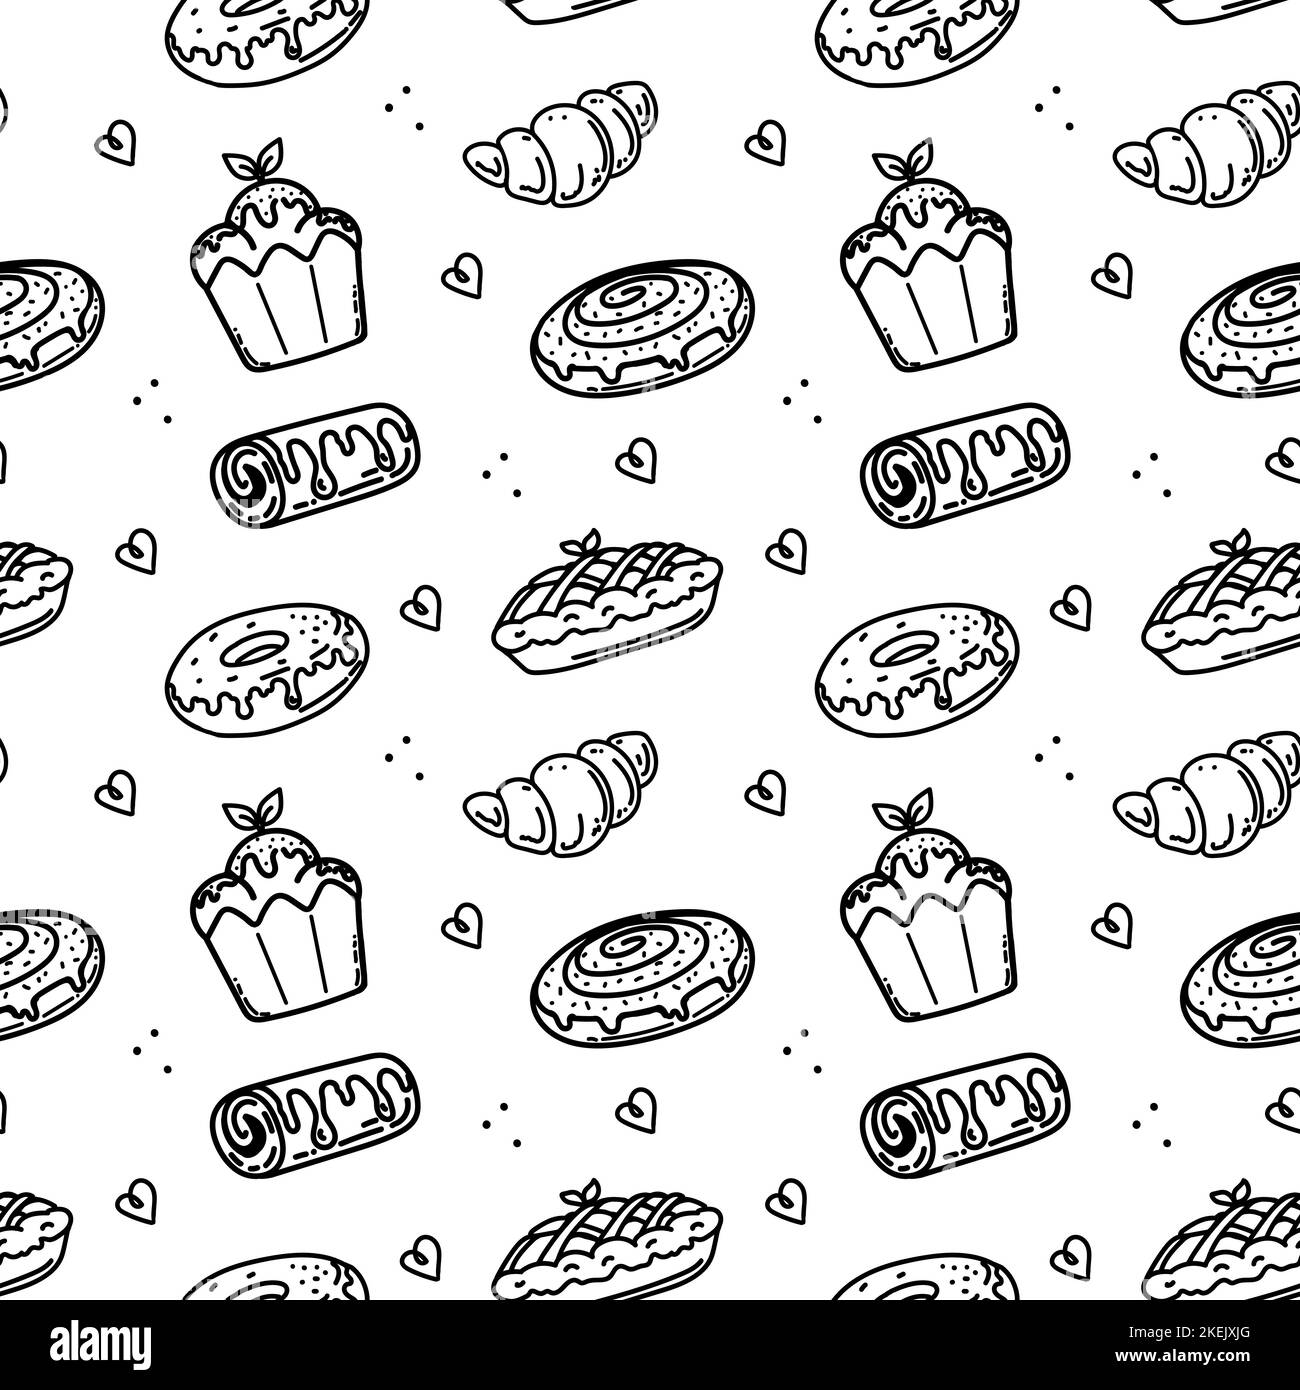 Ein nahtloses Muster aus handgezeichneten Backwaren und Gebäck im Doodle-Stil. Sammlung verschiedener Brotsorten, Croissants, Baguette, Scones, Muffins, M Stock Vektor